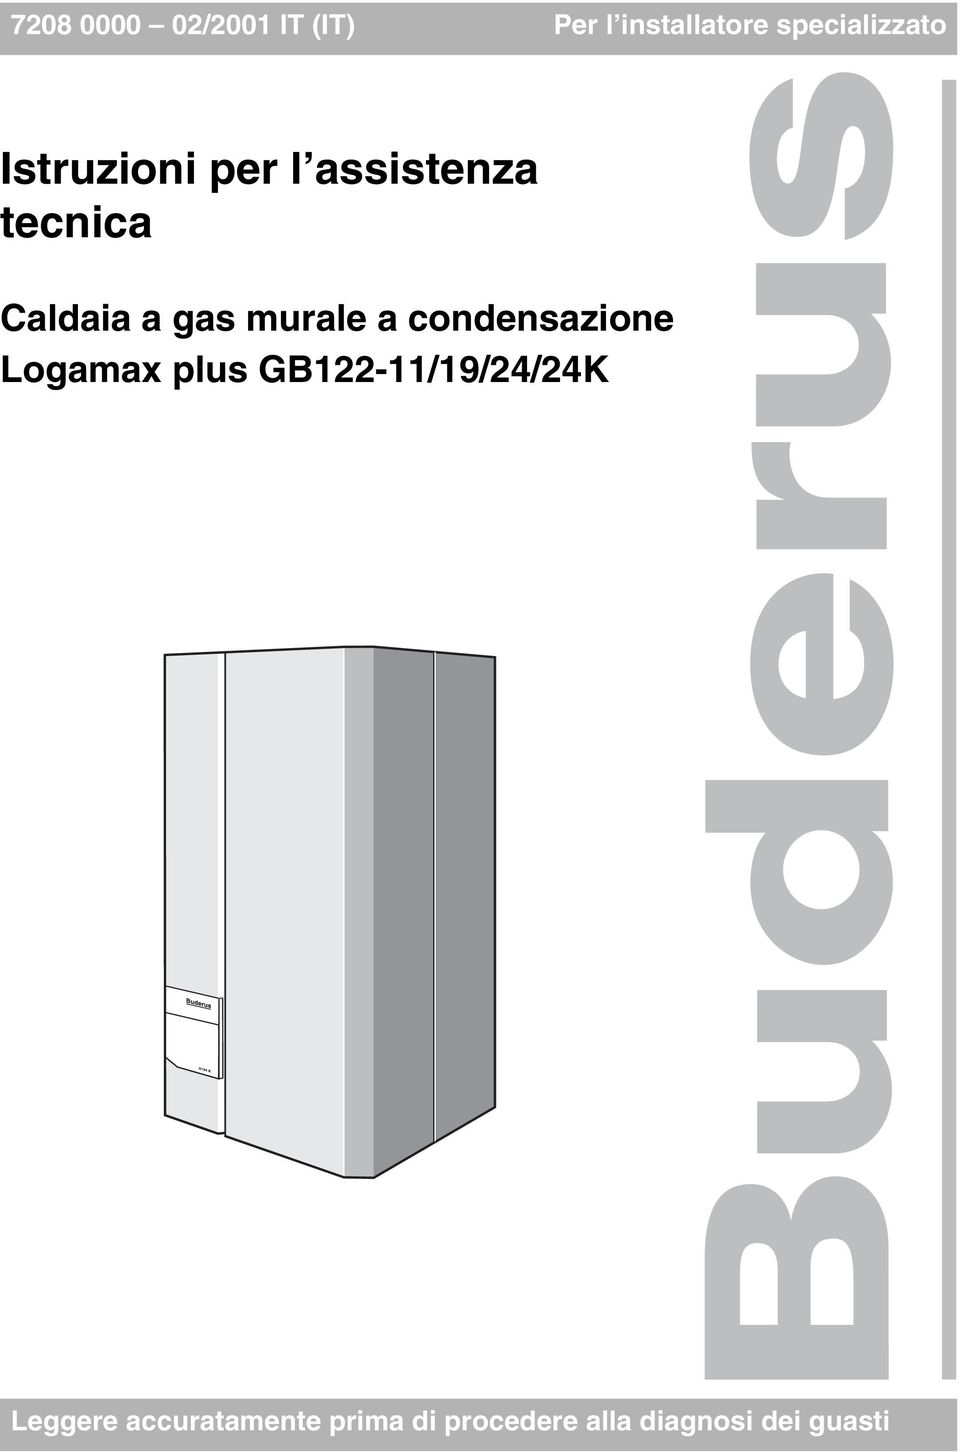 Caldaia a gas murale a condensazione GB22-/9/24/24K